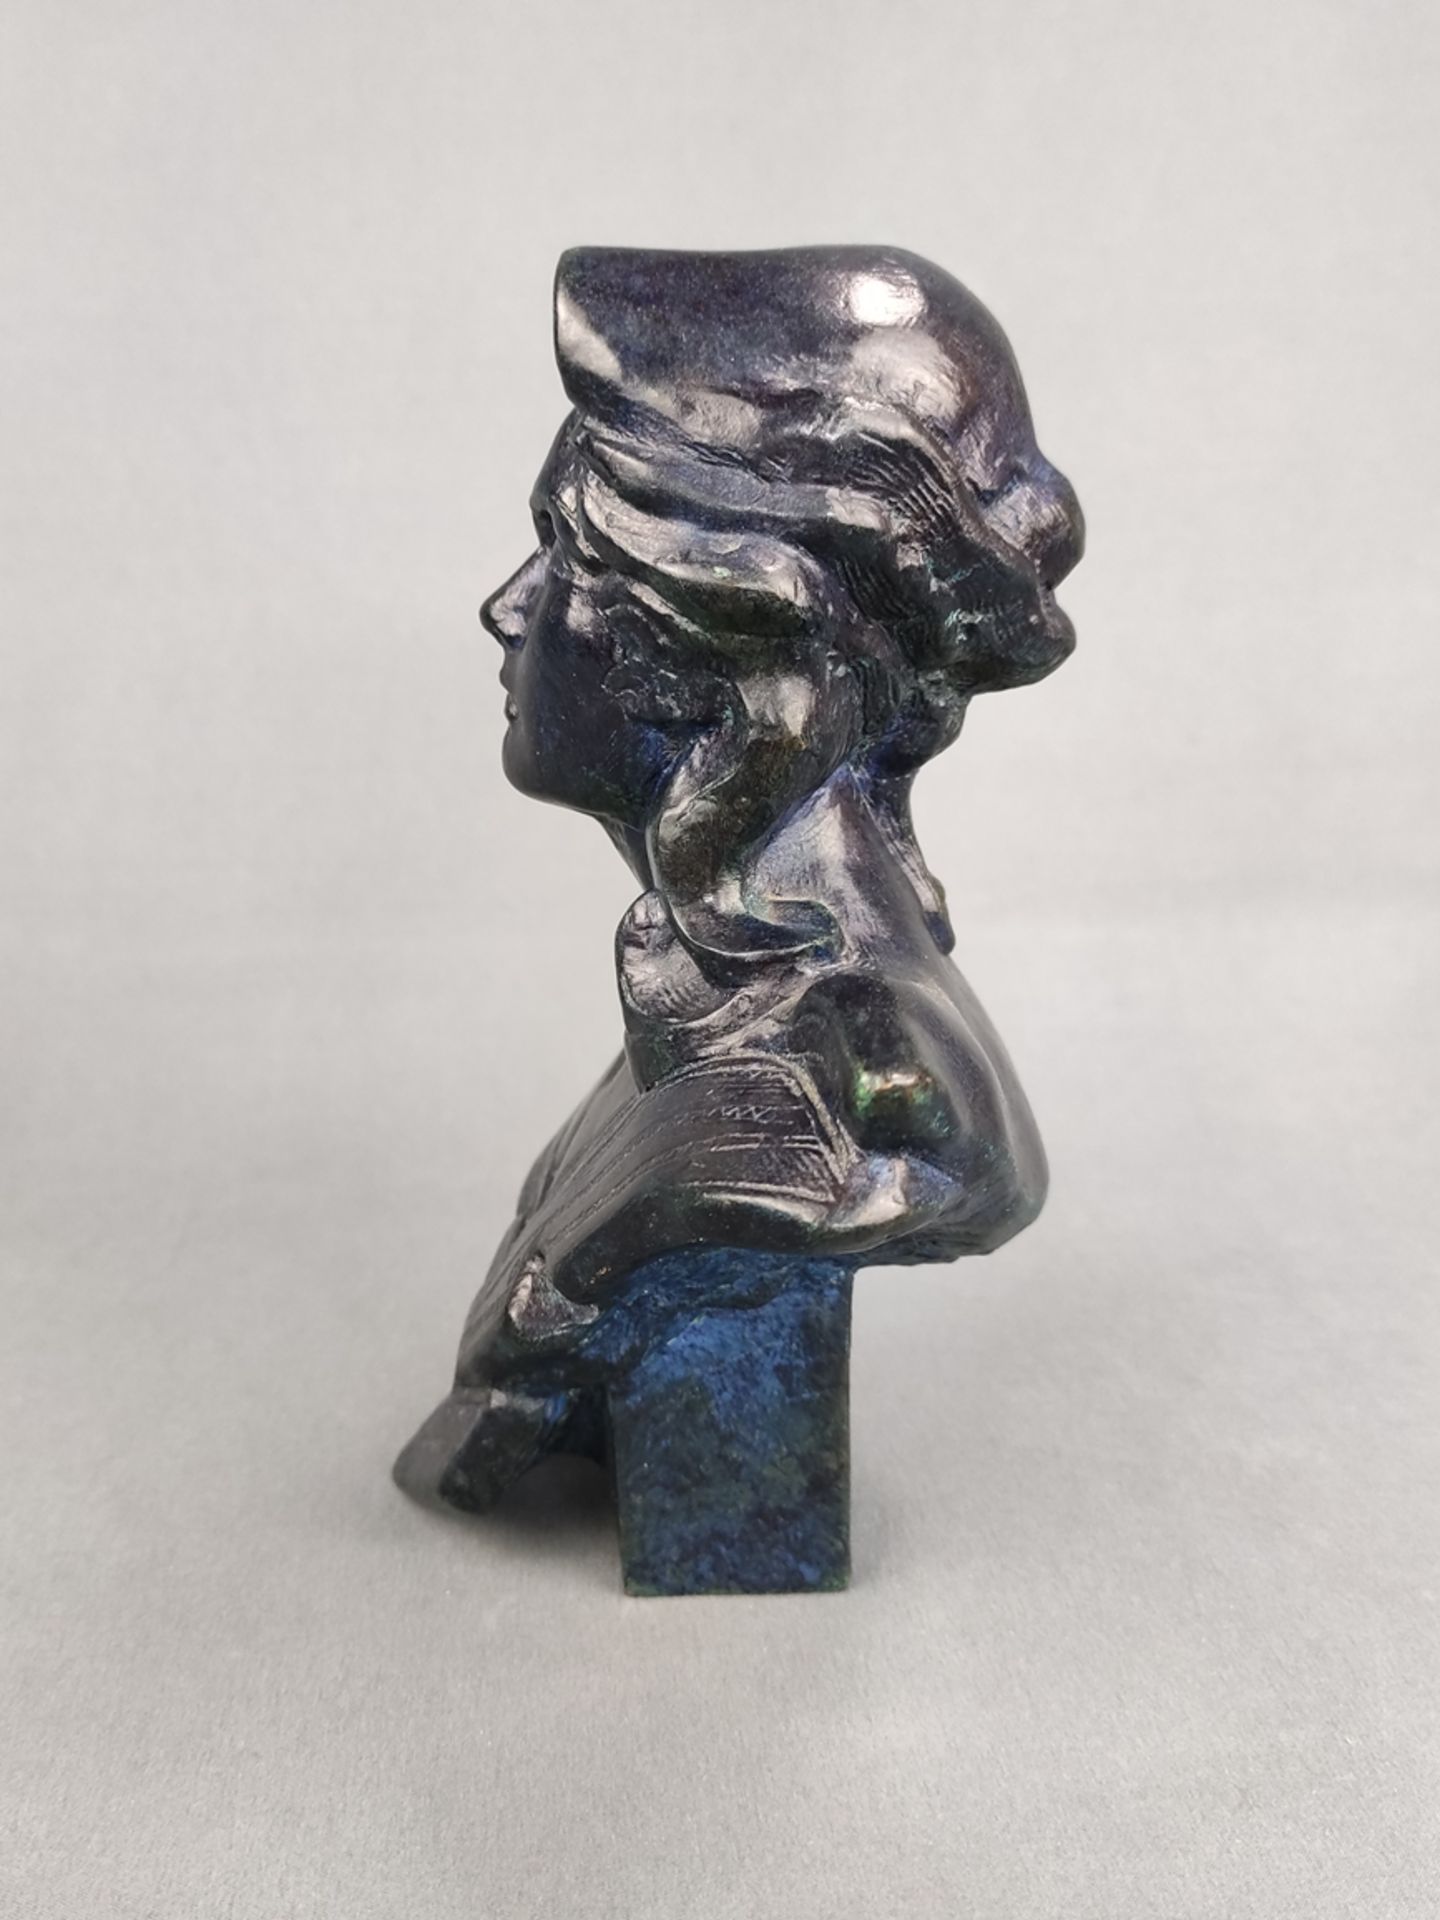 Chavanon, R.L. nach, "Buste de Marianne", Bronze dunkelblau/grün patiniert, datiert 1989 rechst unt - Bild 2 aus 3